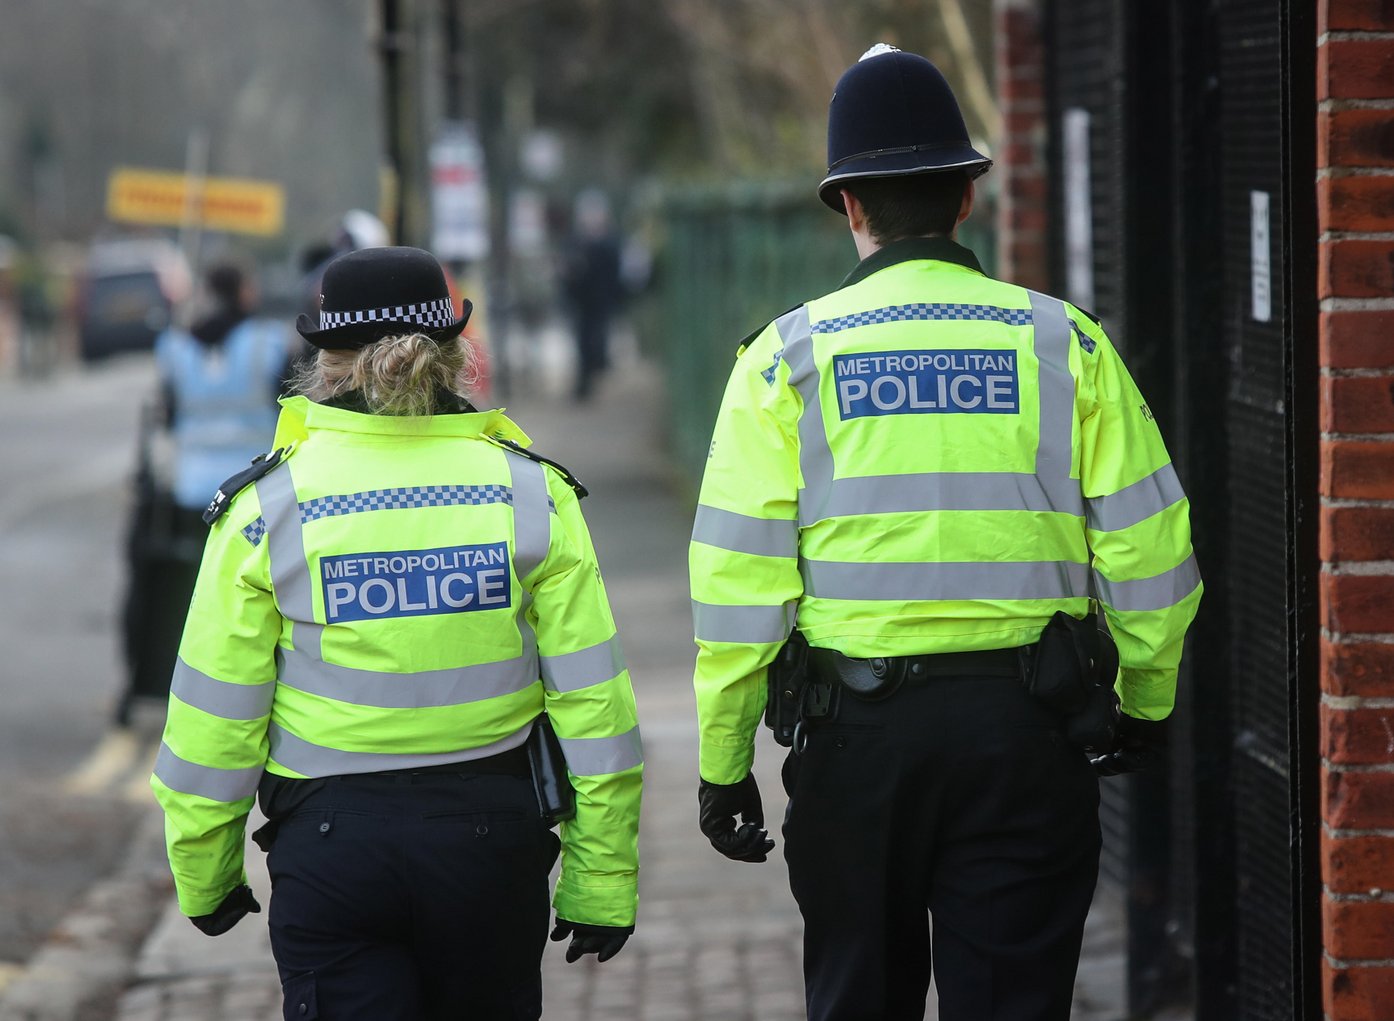 Two Metropolitan Police officers walk on patrol in Fulham, London